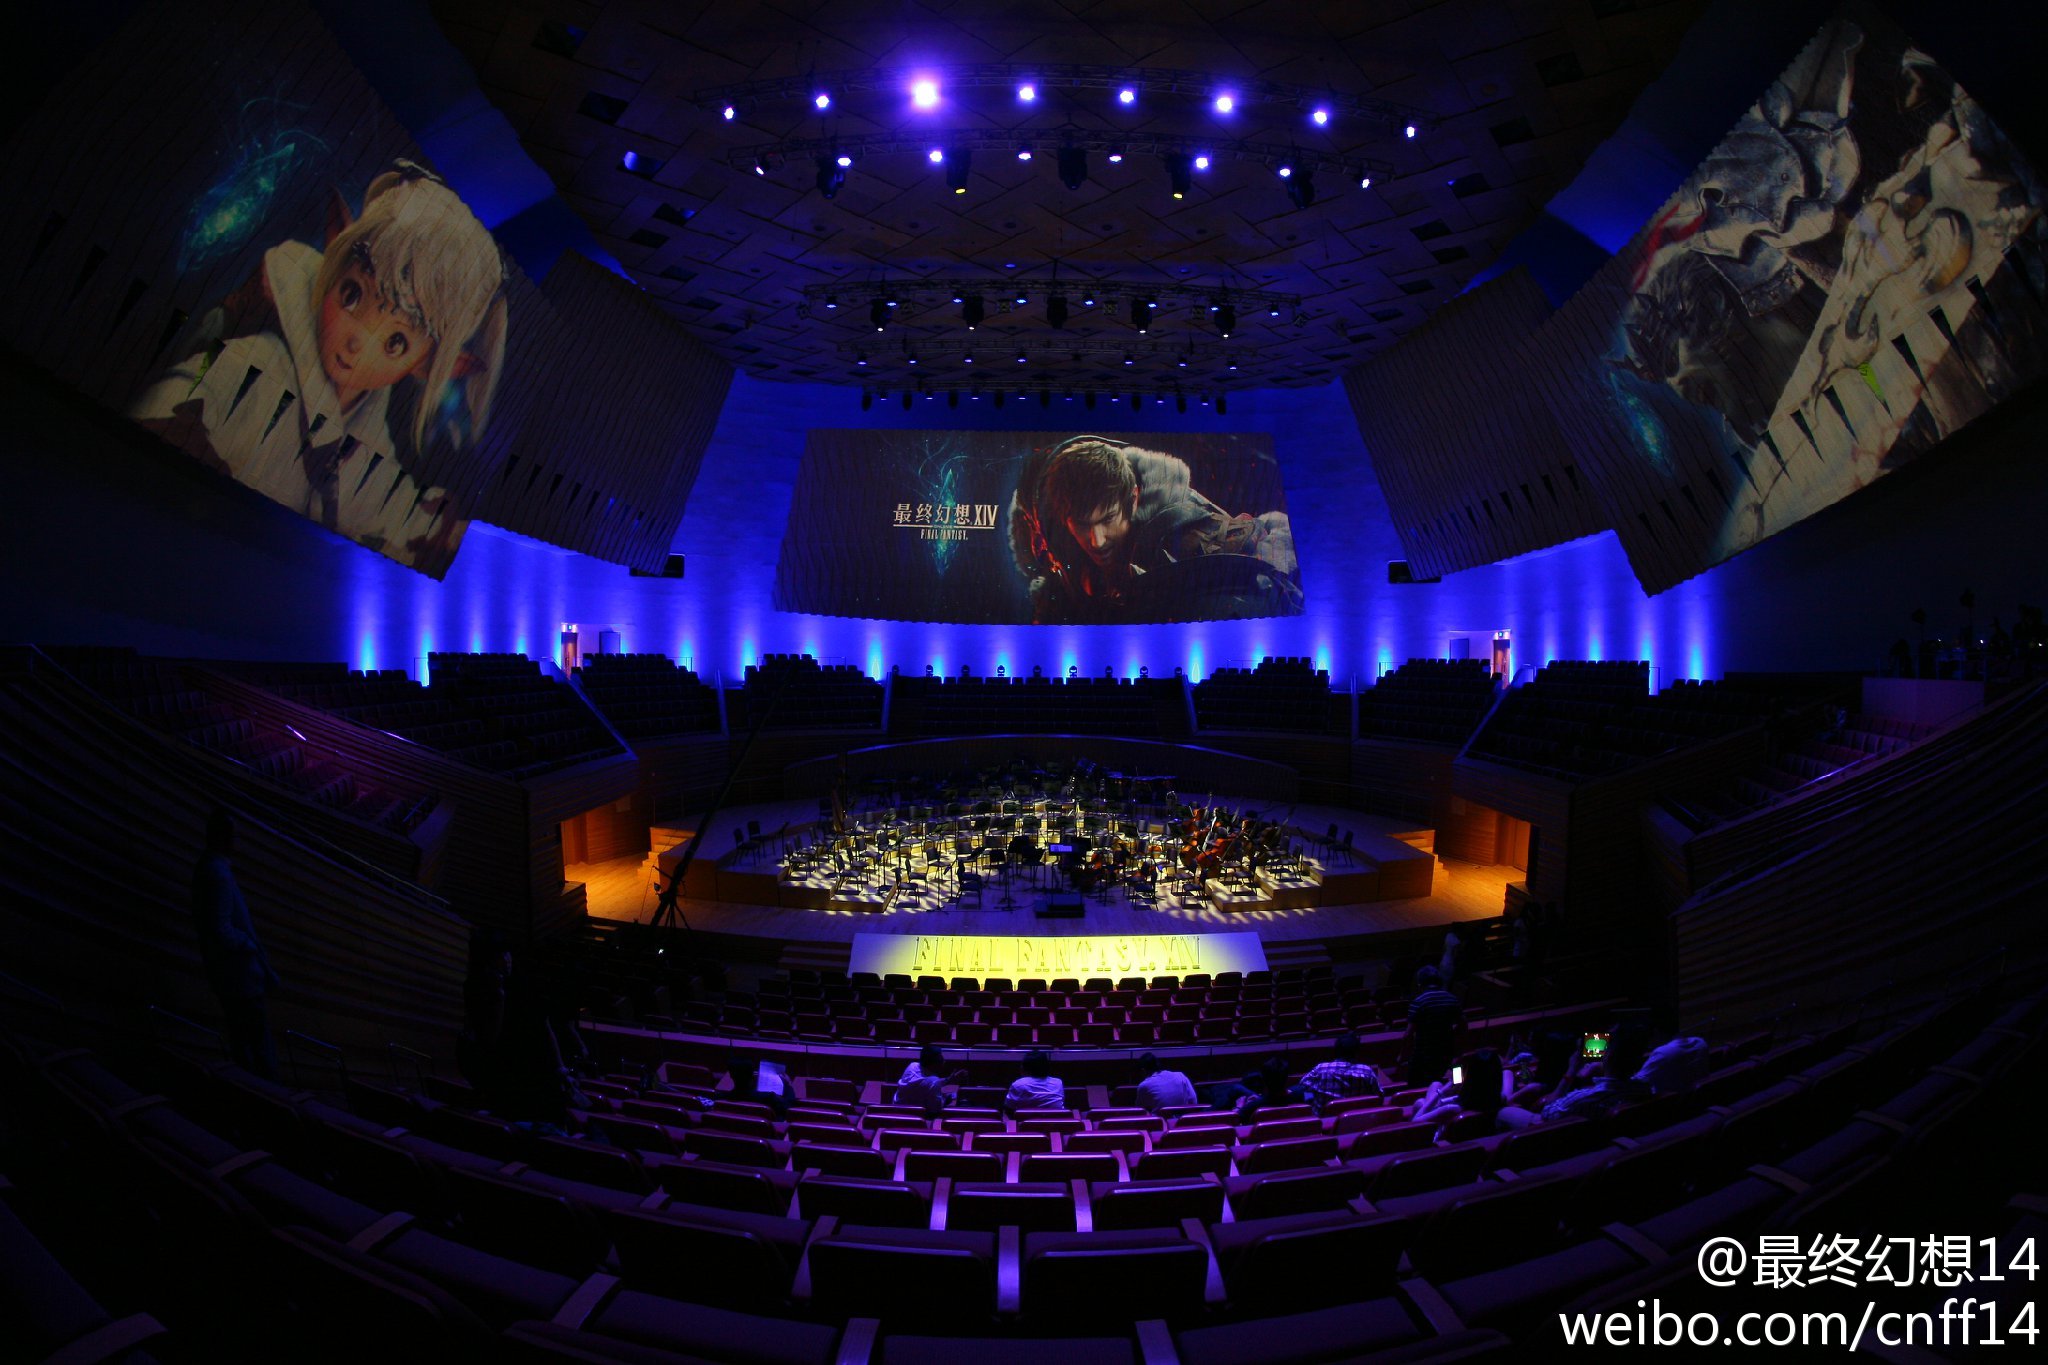 《太空戰士14》交響音樂會通過許可 將於3月在上海舉行